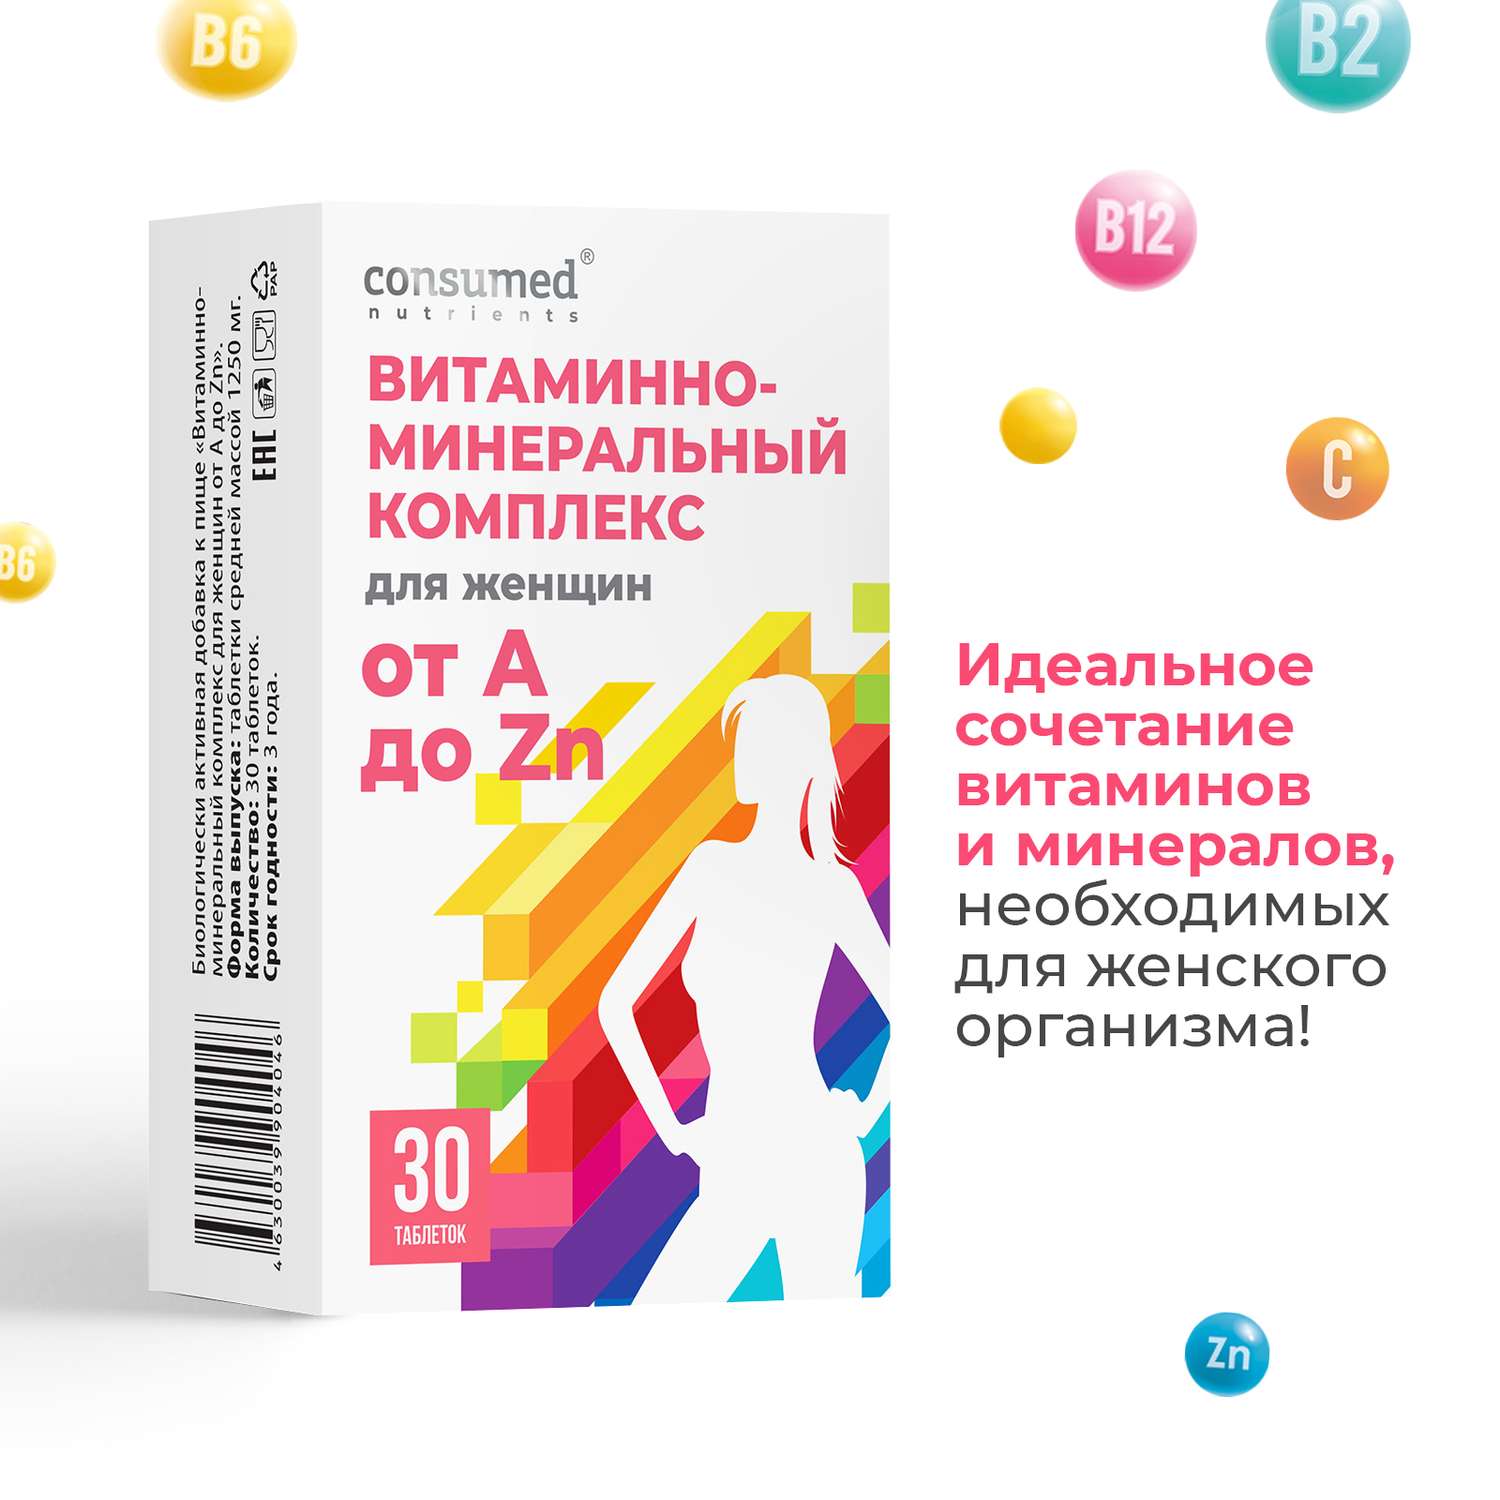 Витаминно-минеральный комплекс Consumed для женщин от А до Zn 30 таблеток - фото 2